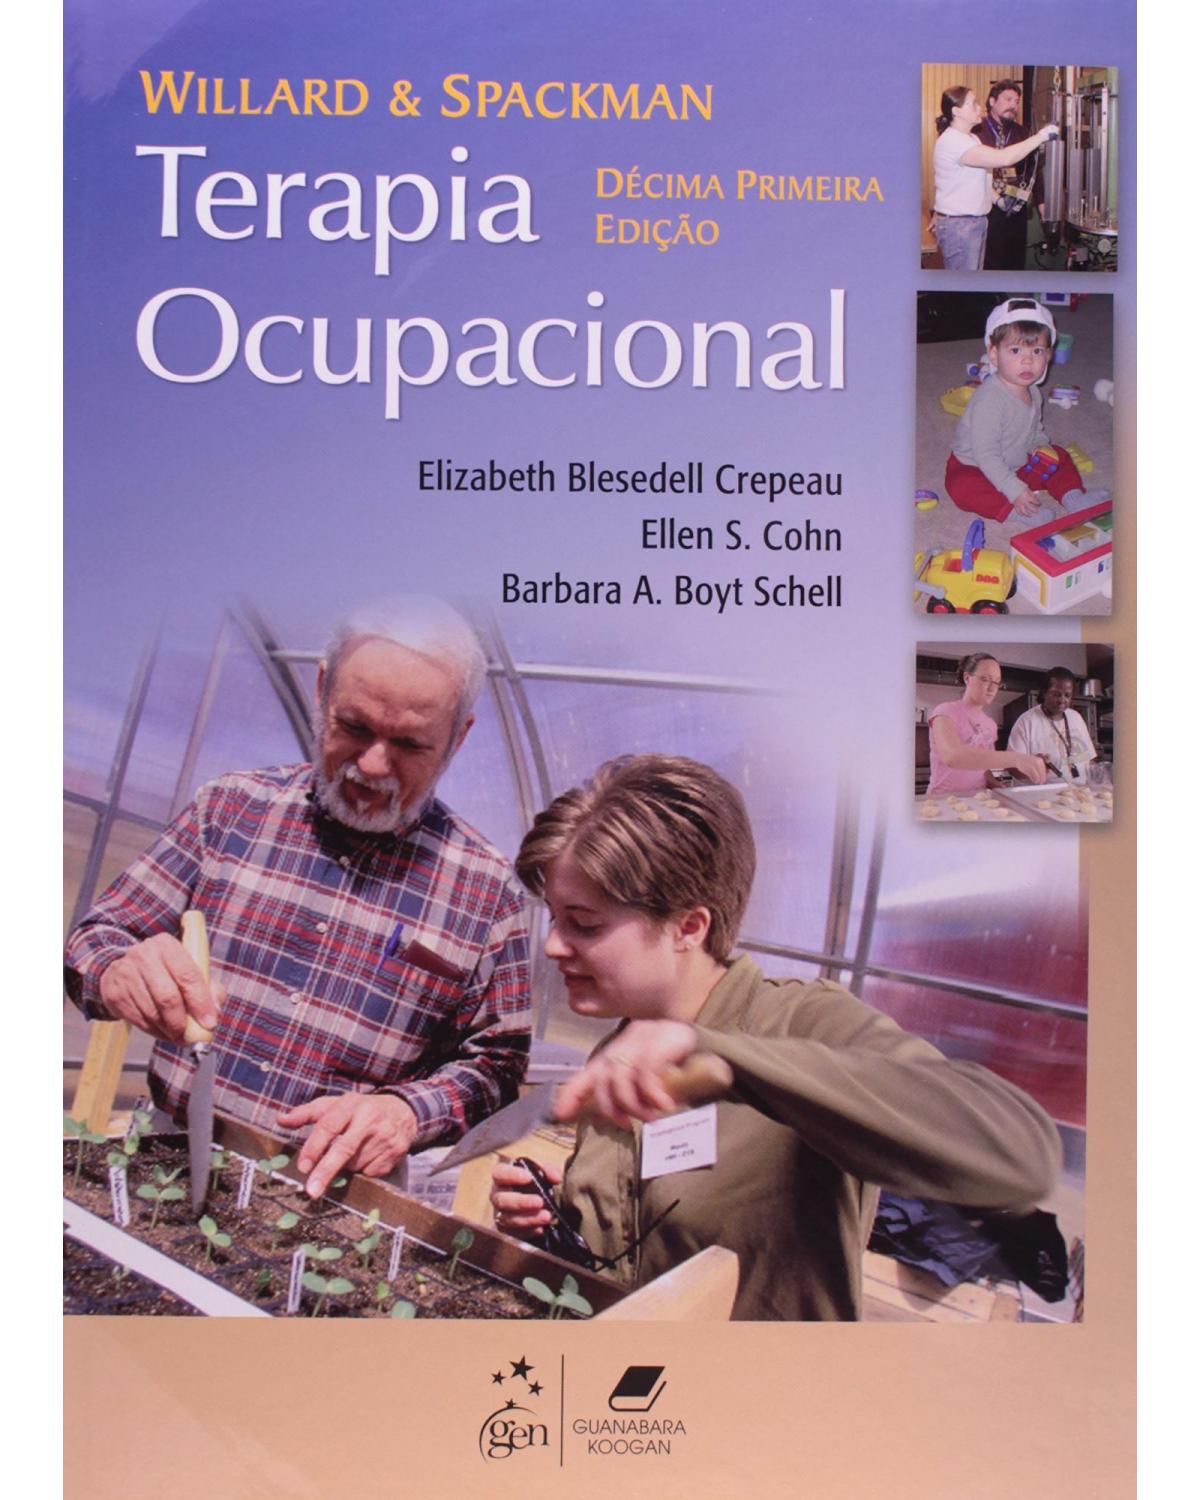 Willard & Spackman - Terapia ocupacional - 11ª Edição | 2011